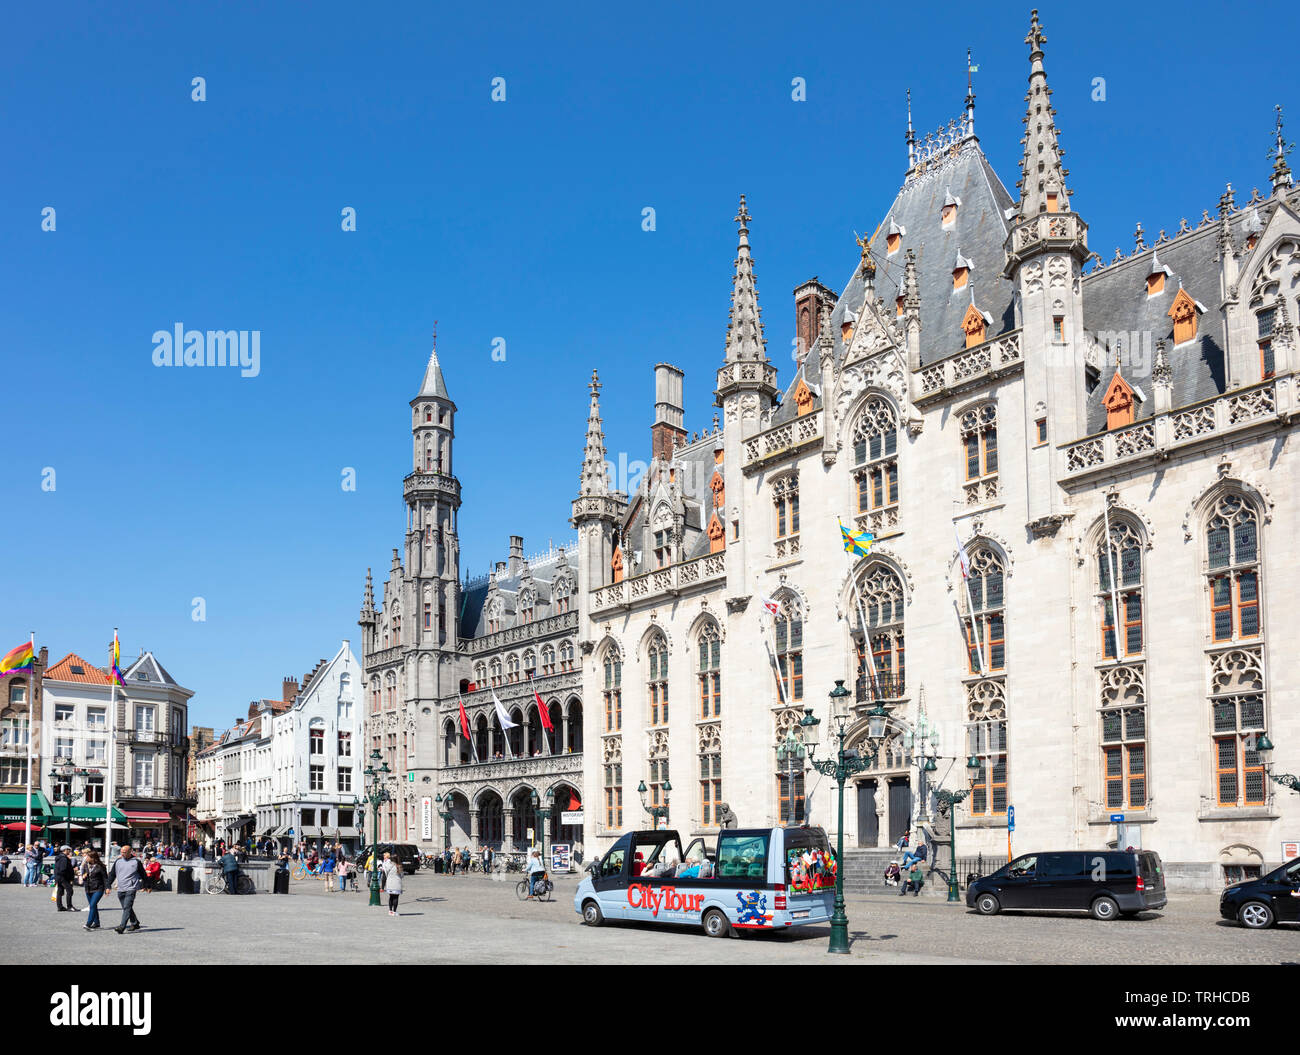 Des touristes se promènent autour de la place du marché historique en passant devant la Cour provinciale Provinciaal Hof dans le Markt Bruges Belgique eu Europe centrale Banque D'Images